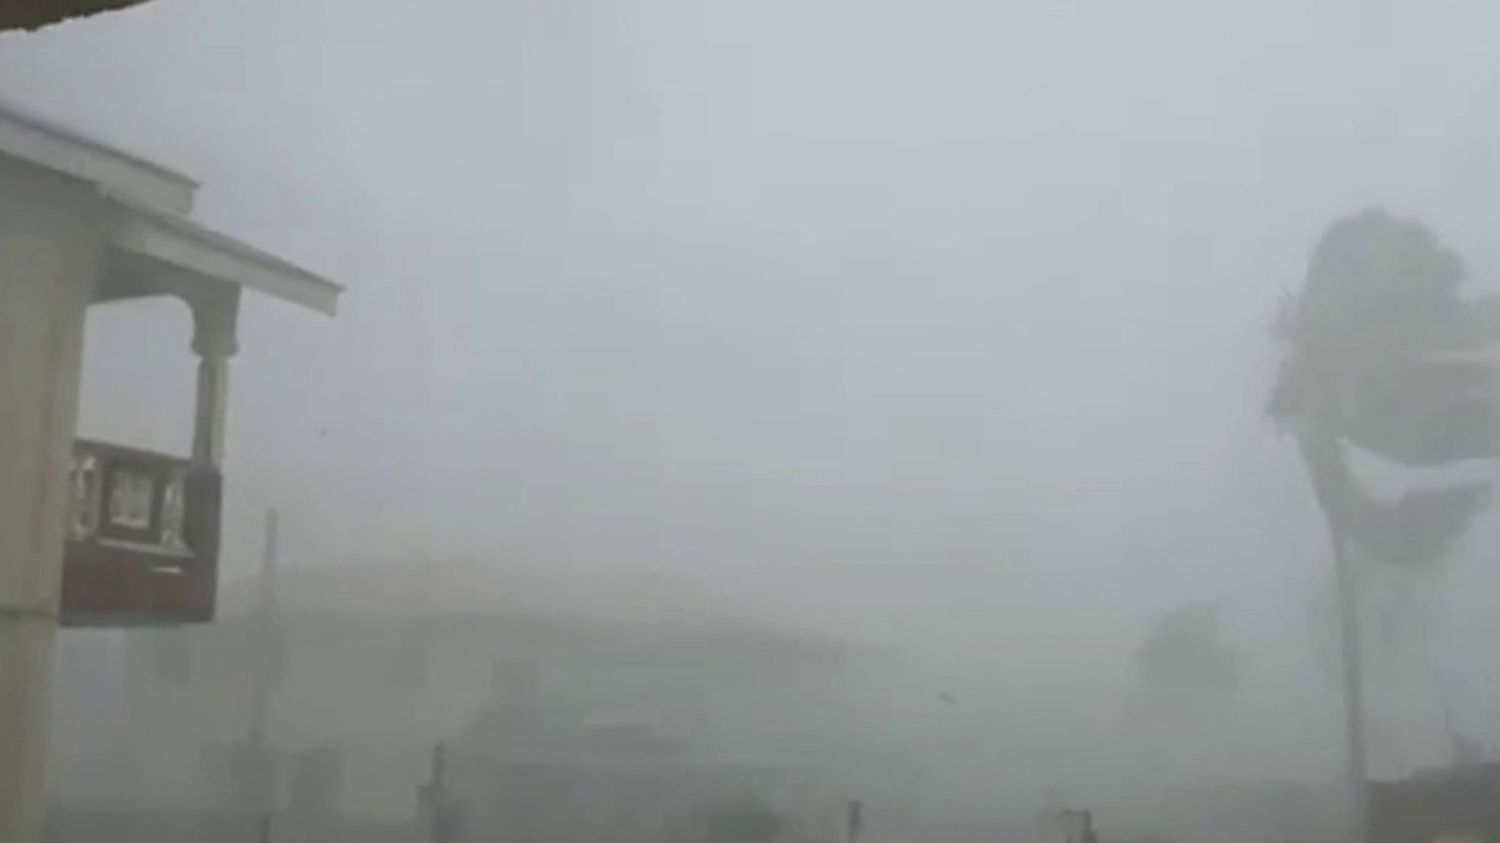 VIDEO. L'ouragan Béryl balaye les Caraïbes, des vents violents et des fortes vagues provoquent d'importants dégâts